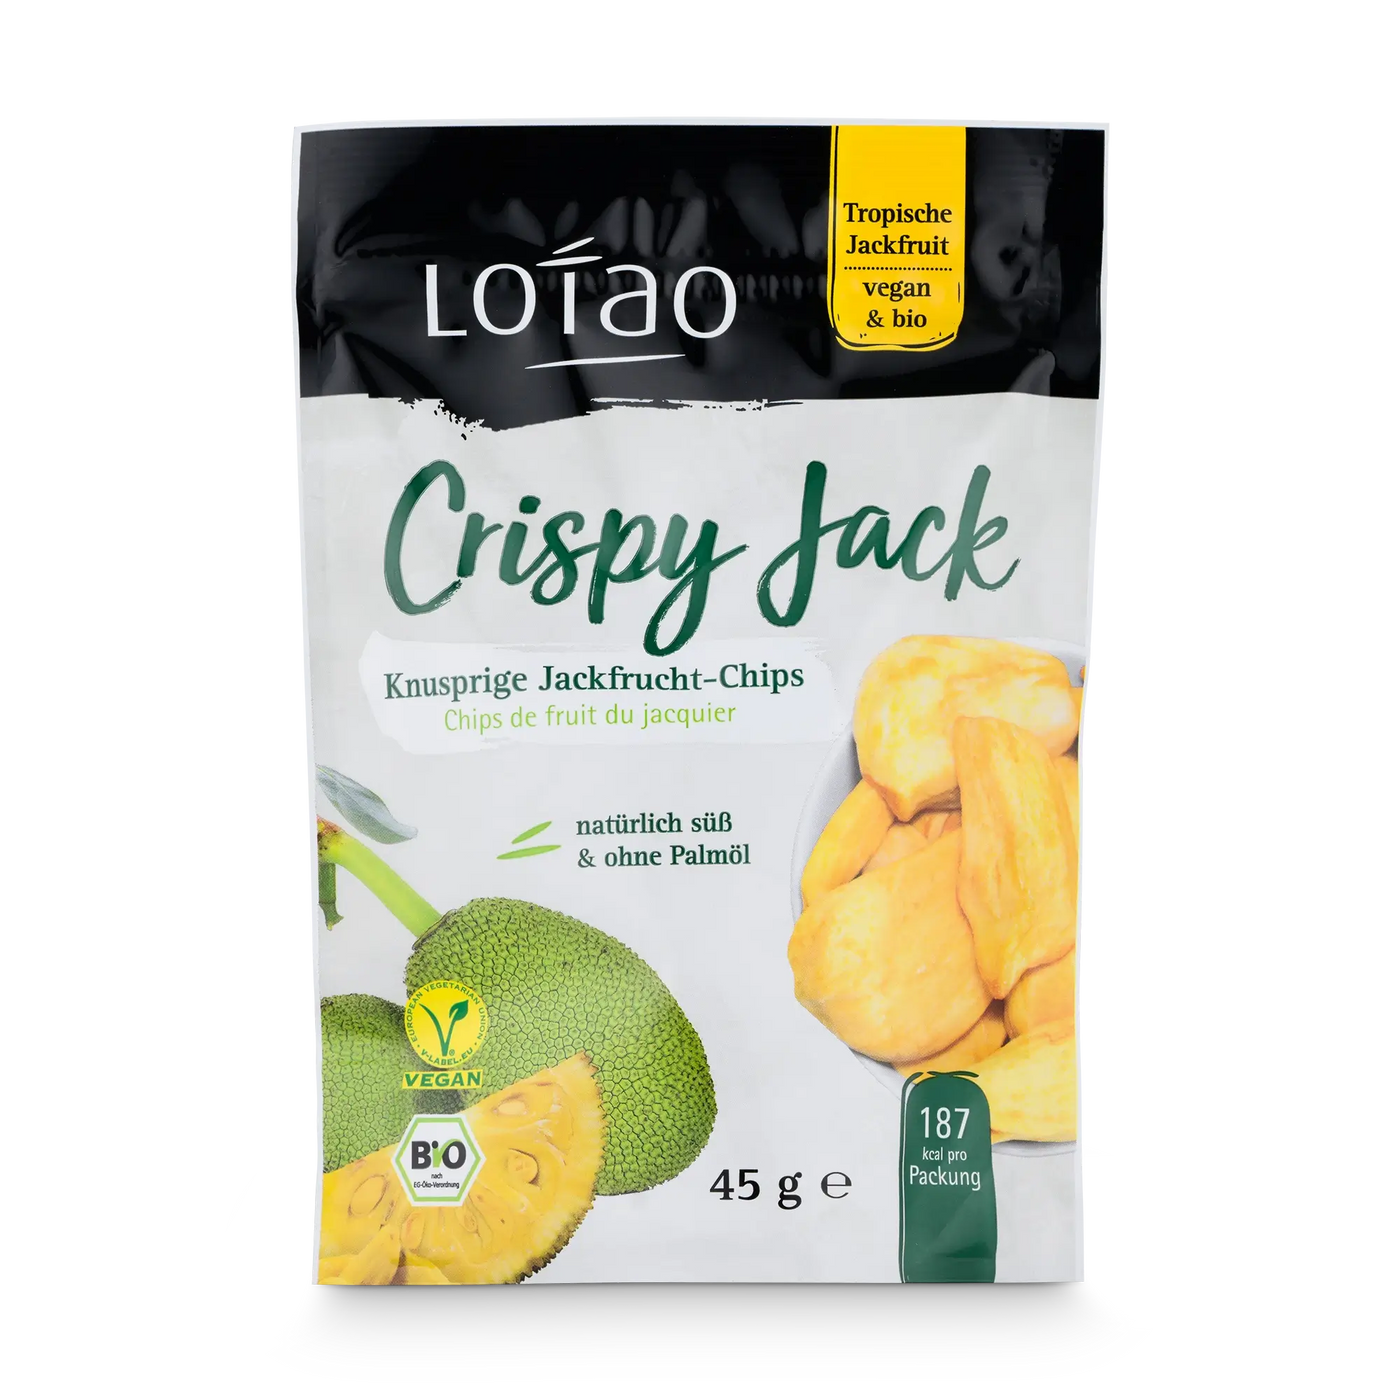 Lotao Crispy Jack sind knusprige Jackfruit-Chips in veganer Bio-Qualität ohne Palmöl, hier als 45g Tüte